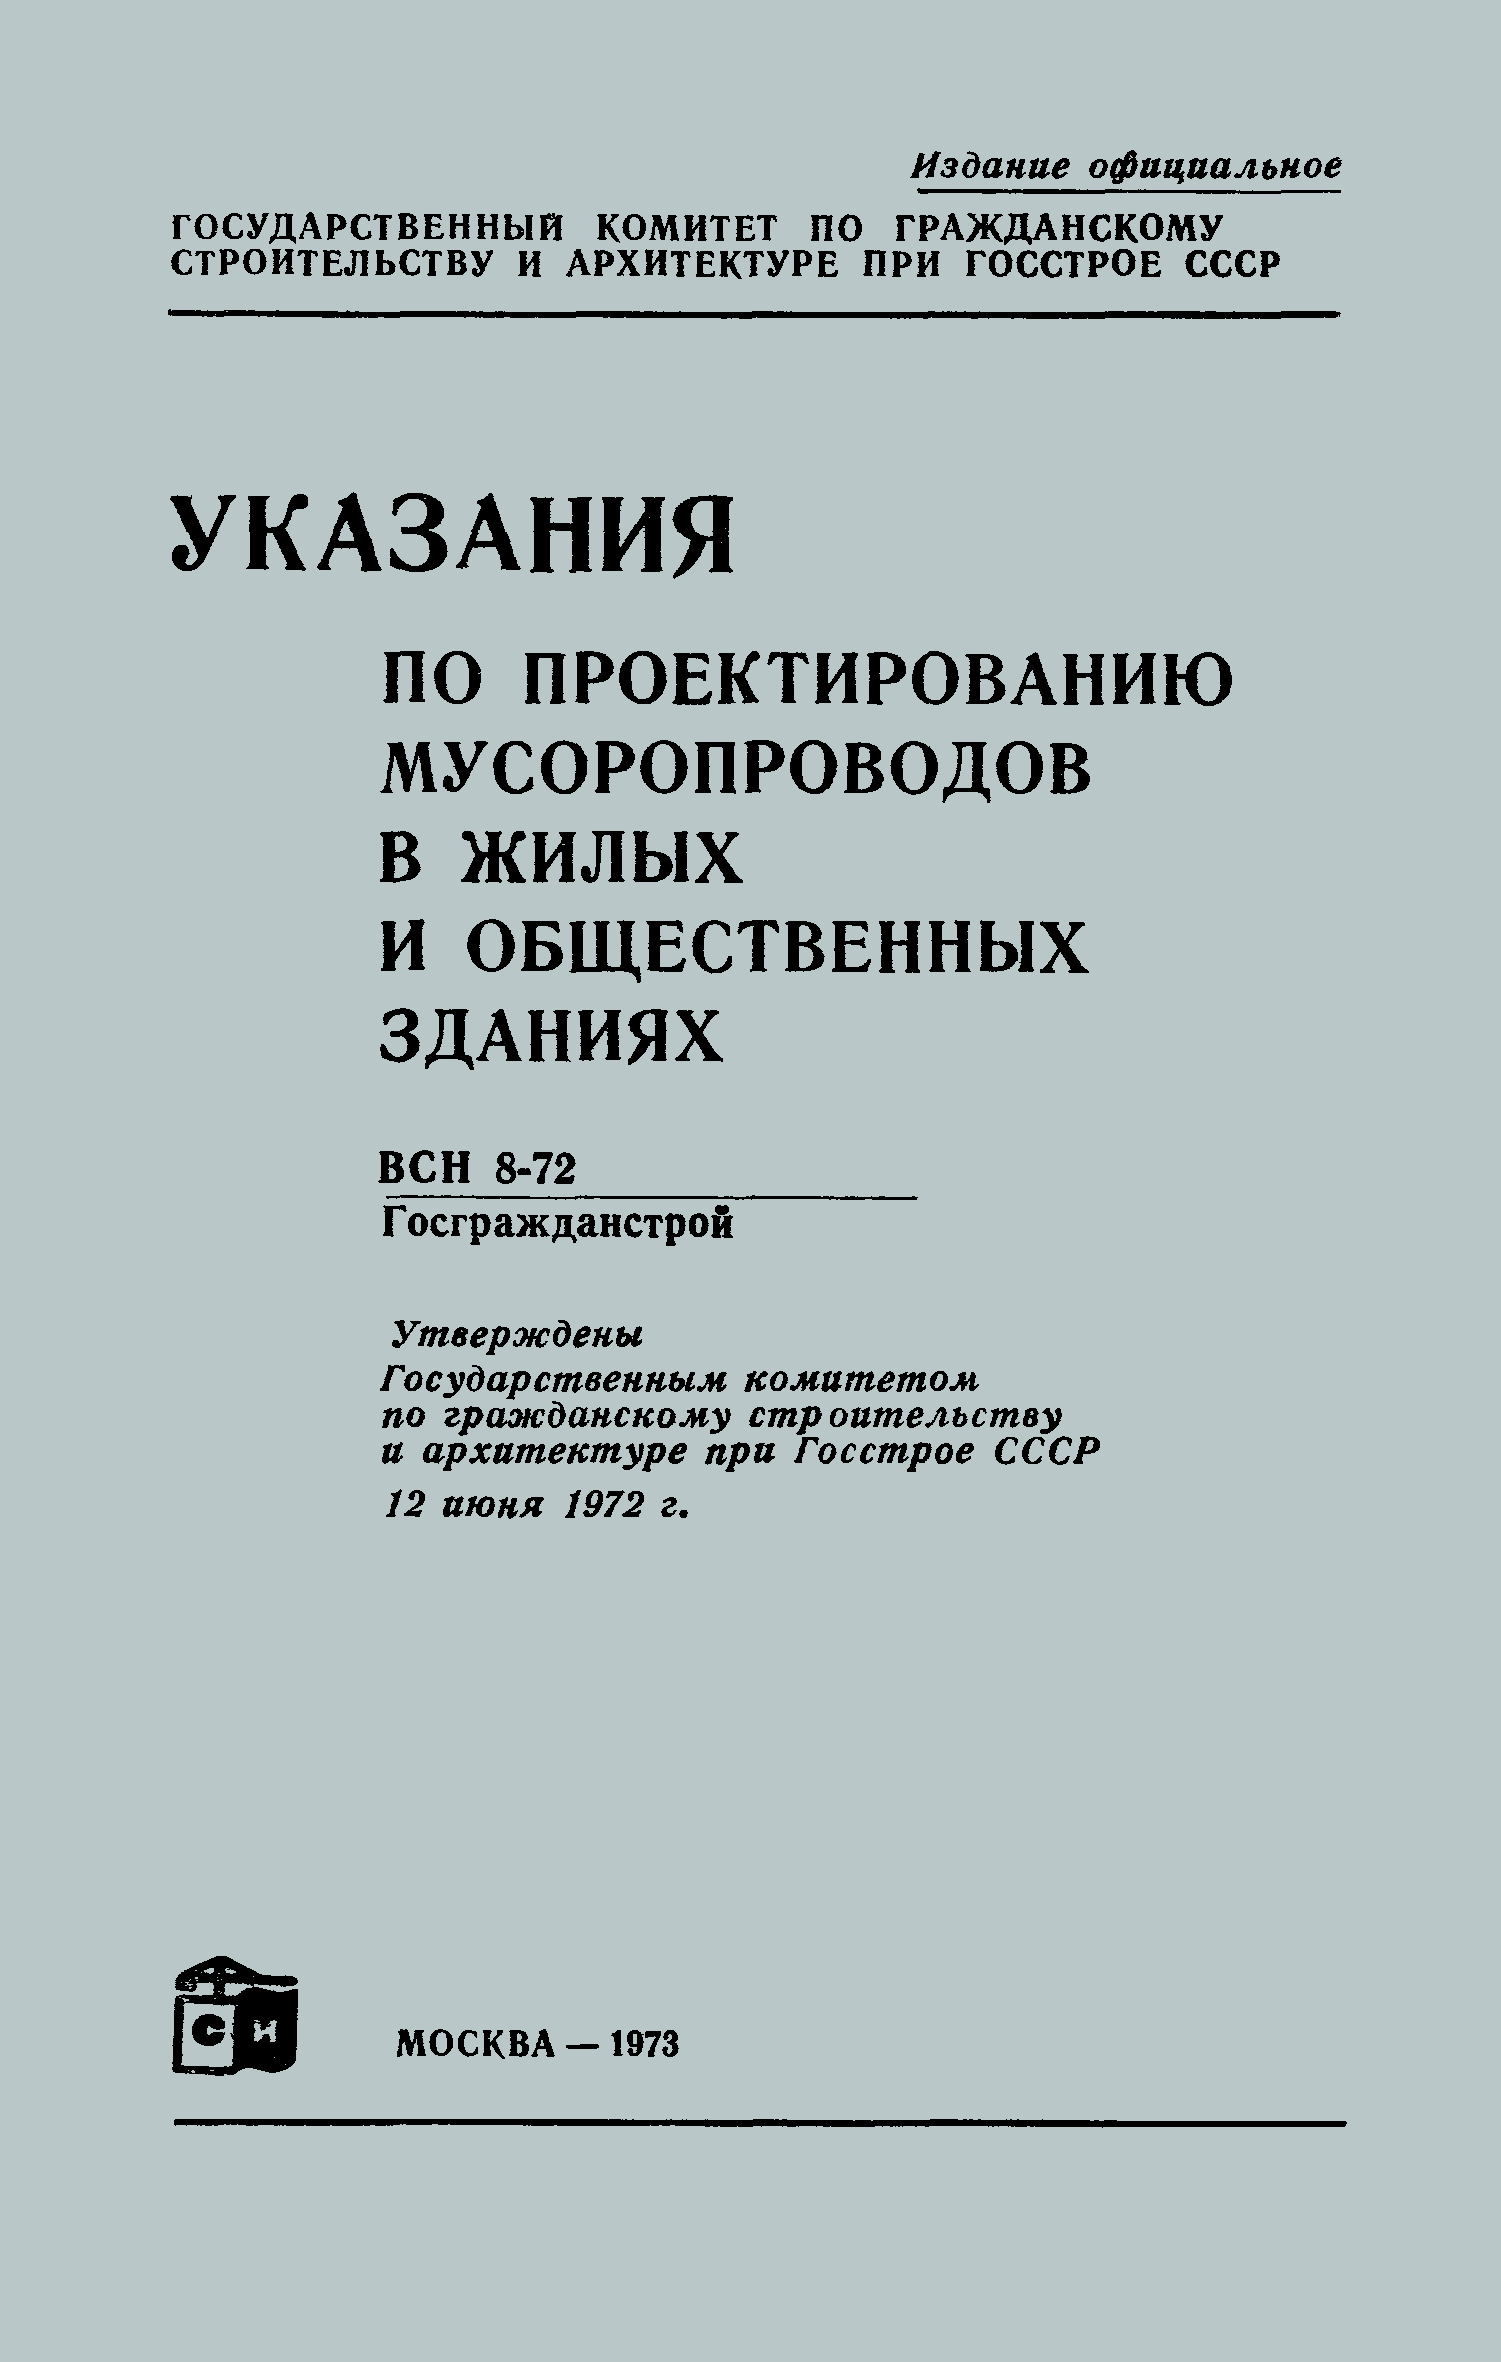 ВСН 8-72